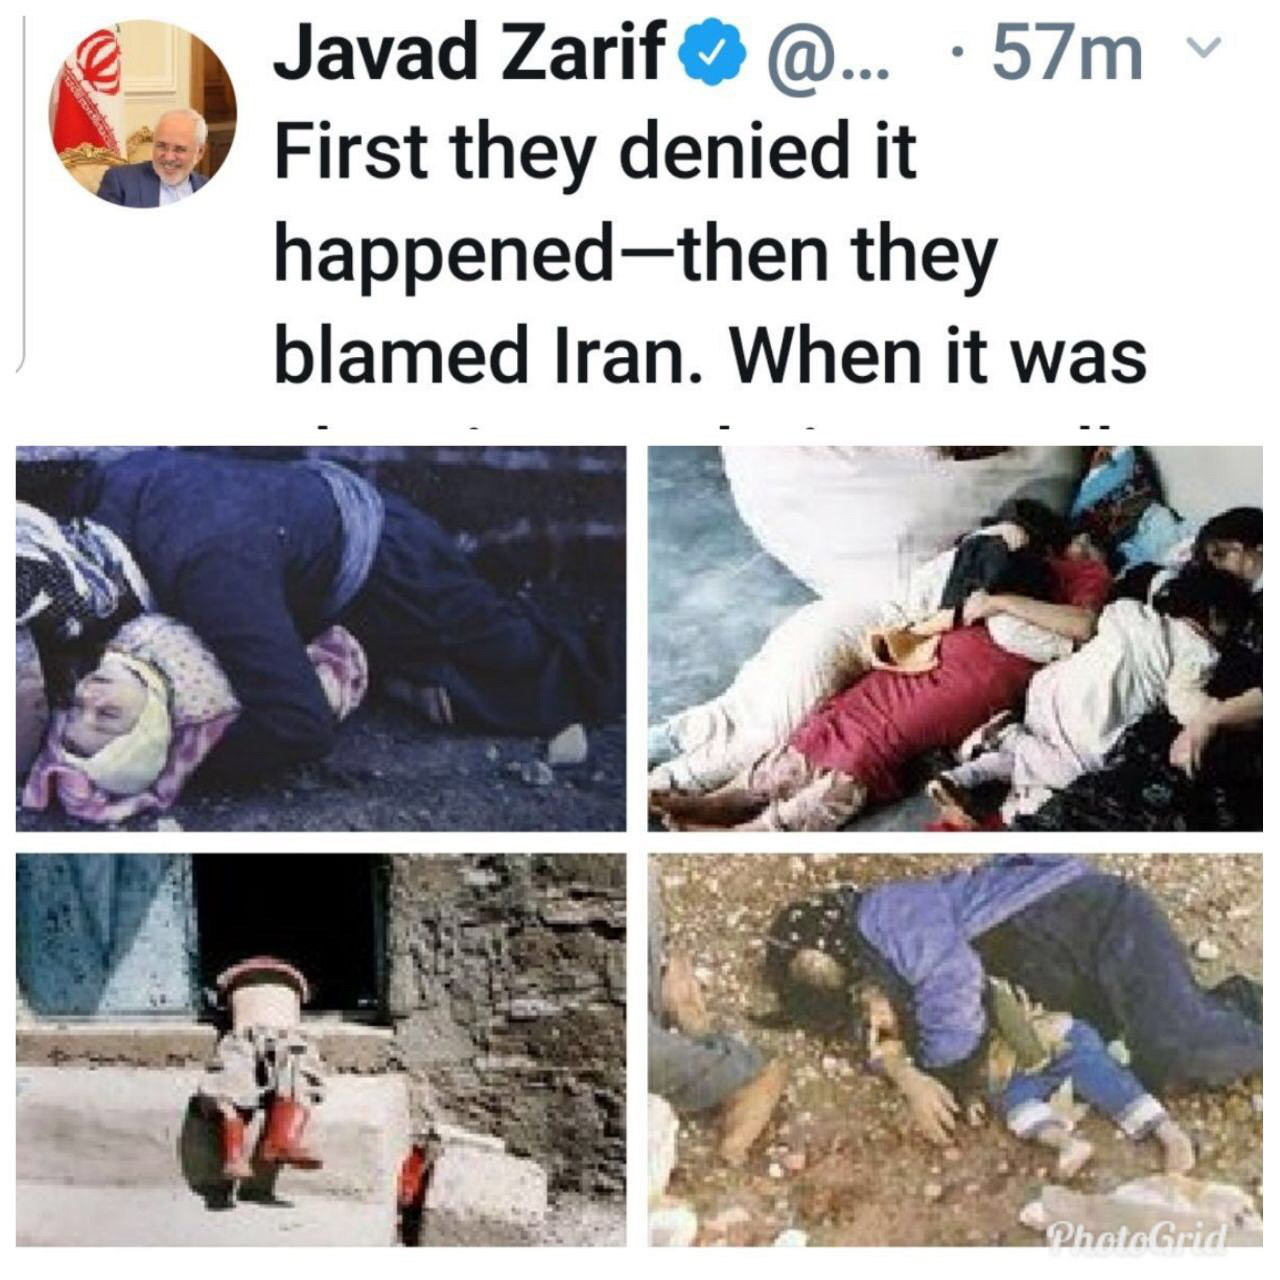 توئیت ظریف در سالگرد بمباران شیمیایی حلبچه: هرگز فراموش نخواهیم کرد